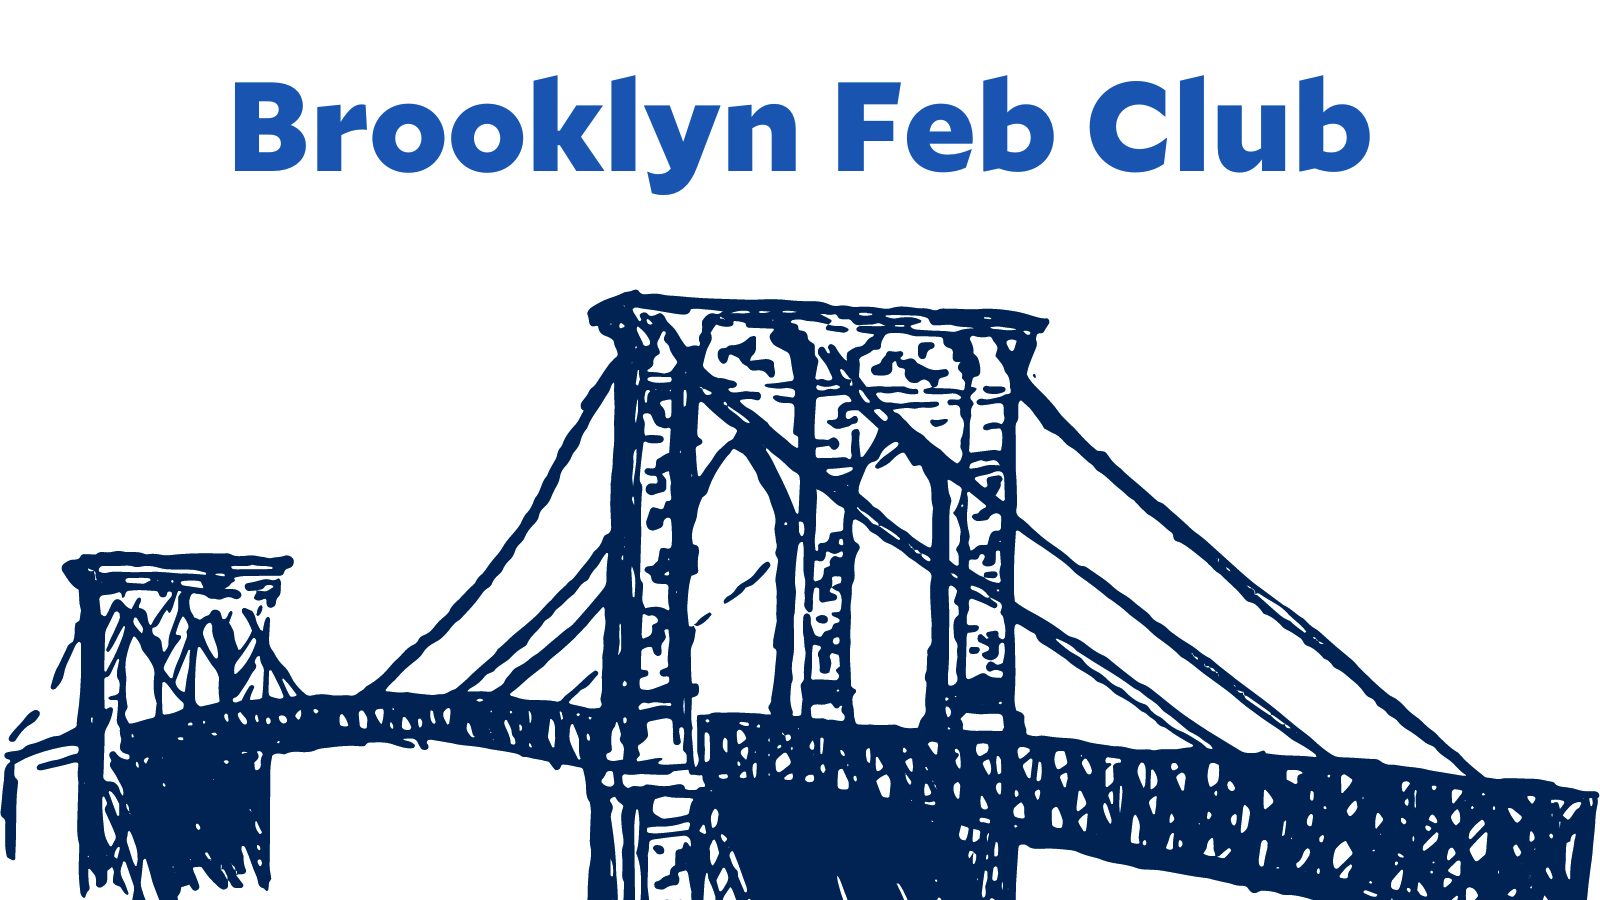 Brooklyn Feb Club